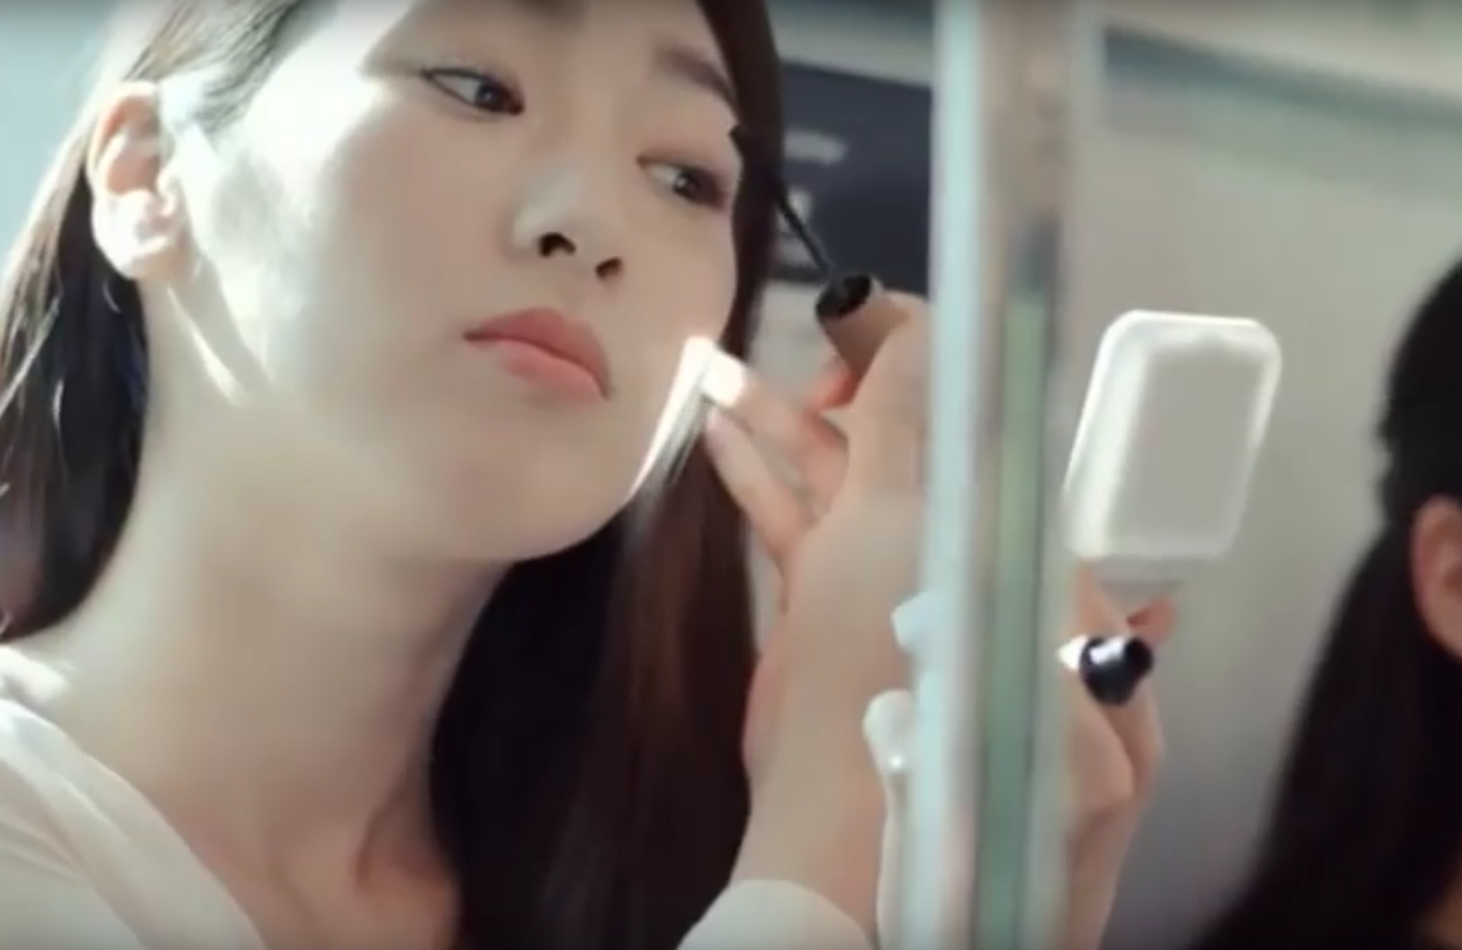 Le maquillage se classe en 8e position des pires nuisances pour les usagers du métro au Japon.